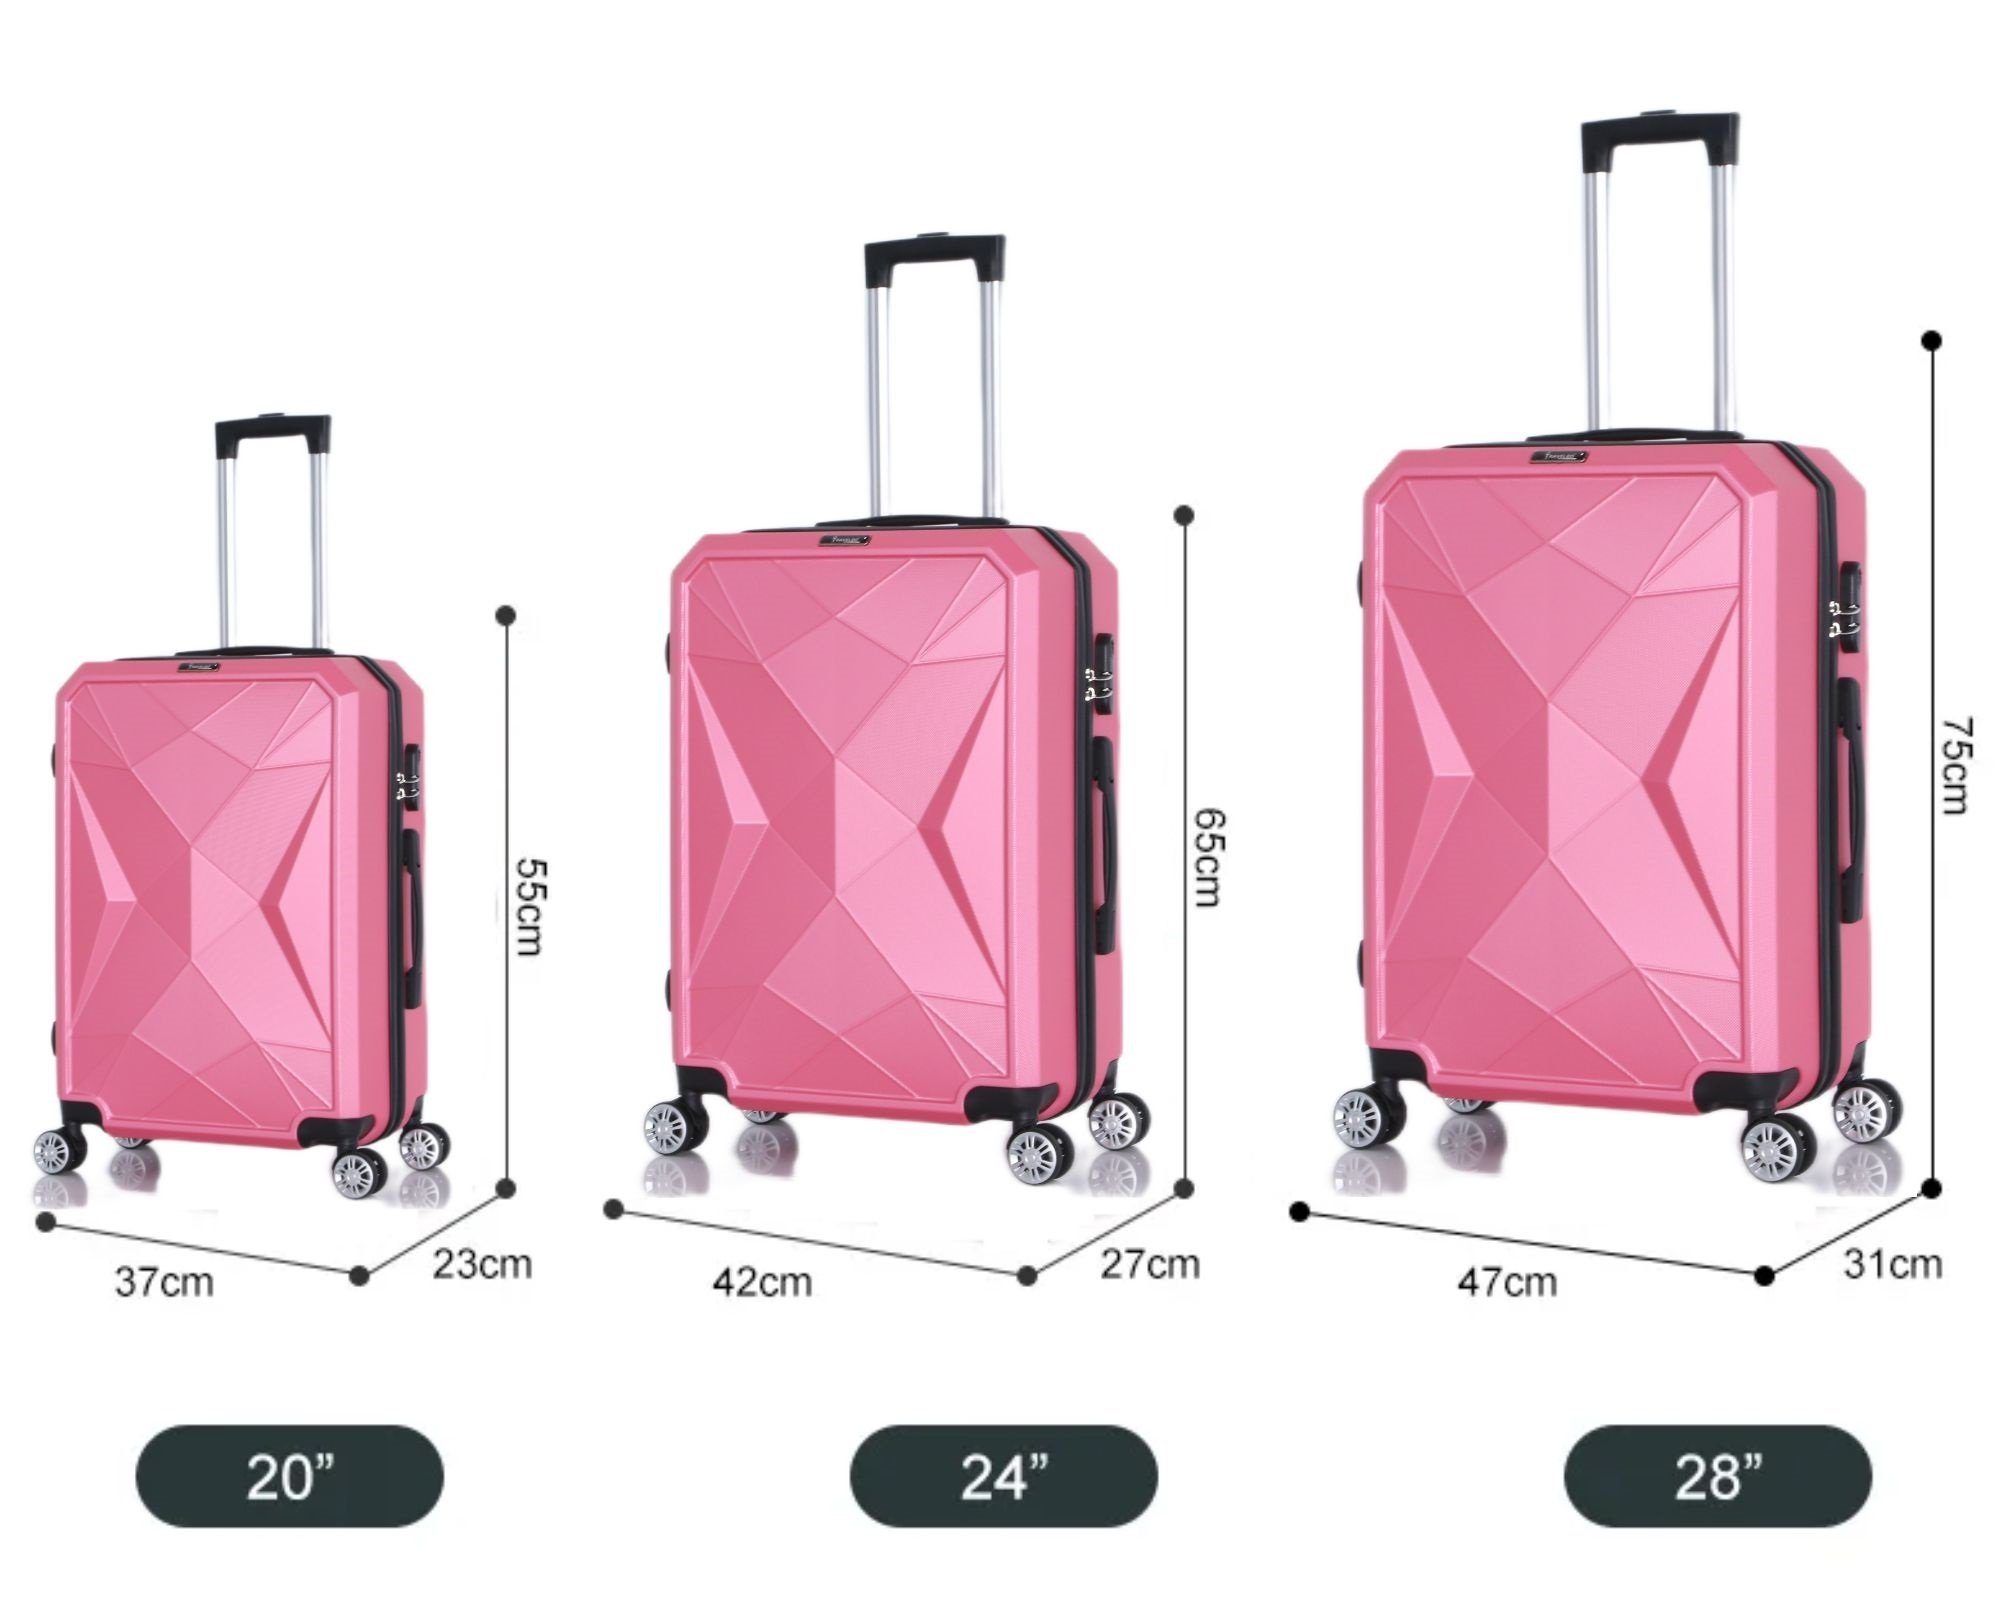 Rungassi Kofferset pink Trolley Reisekoffer Set Koffer Rungassi Hartschalenkoffer ABS03